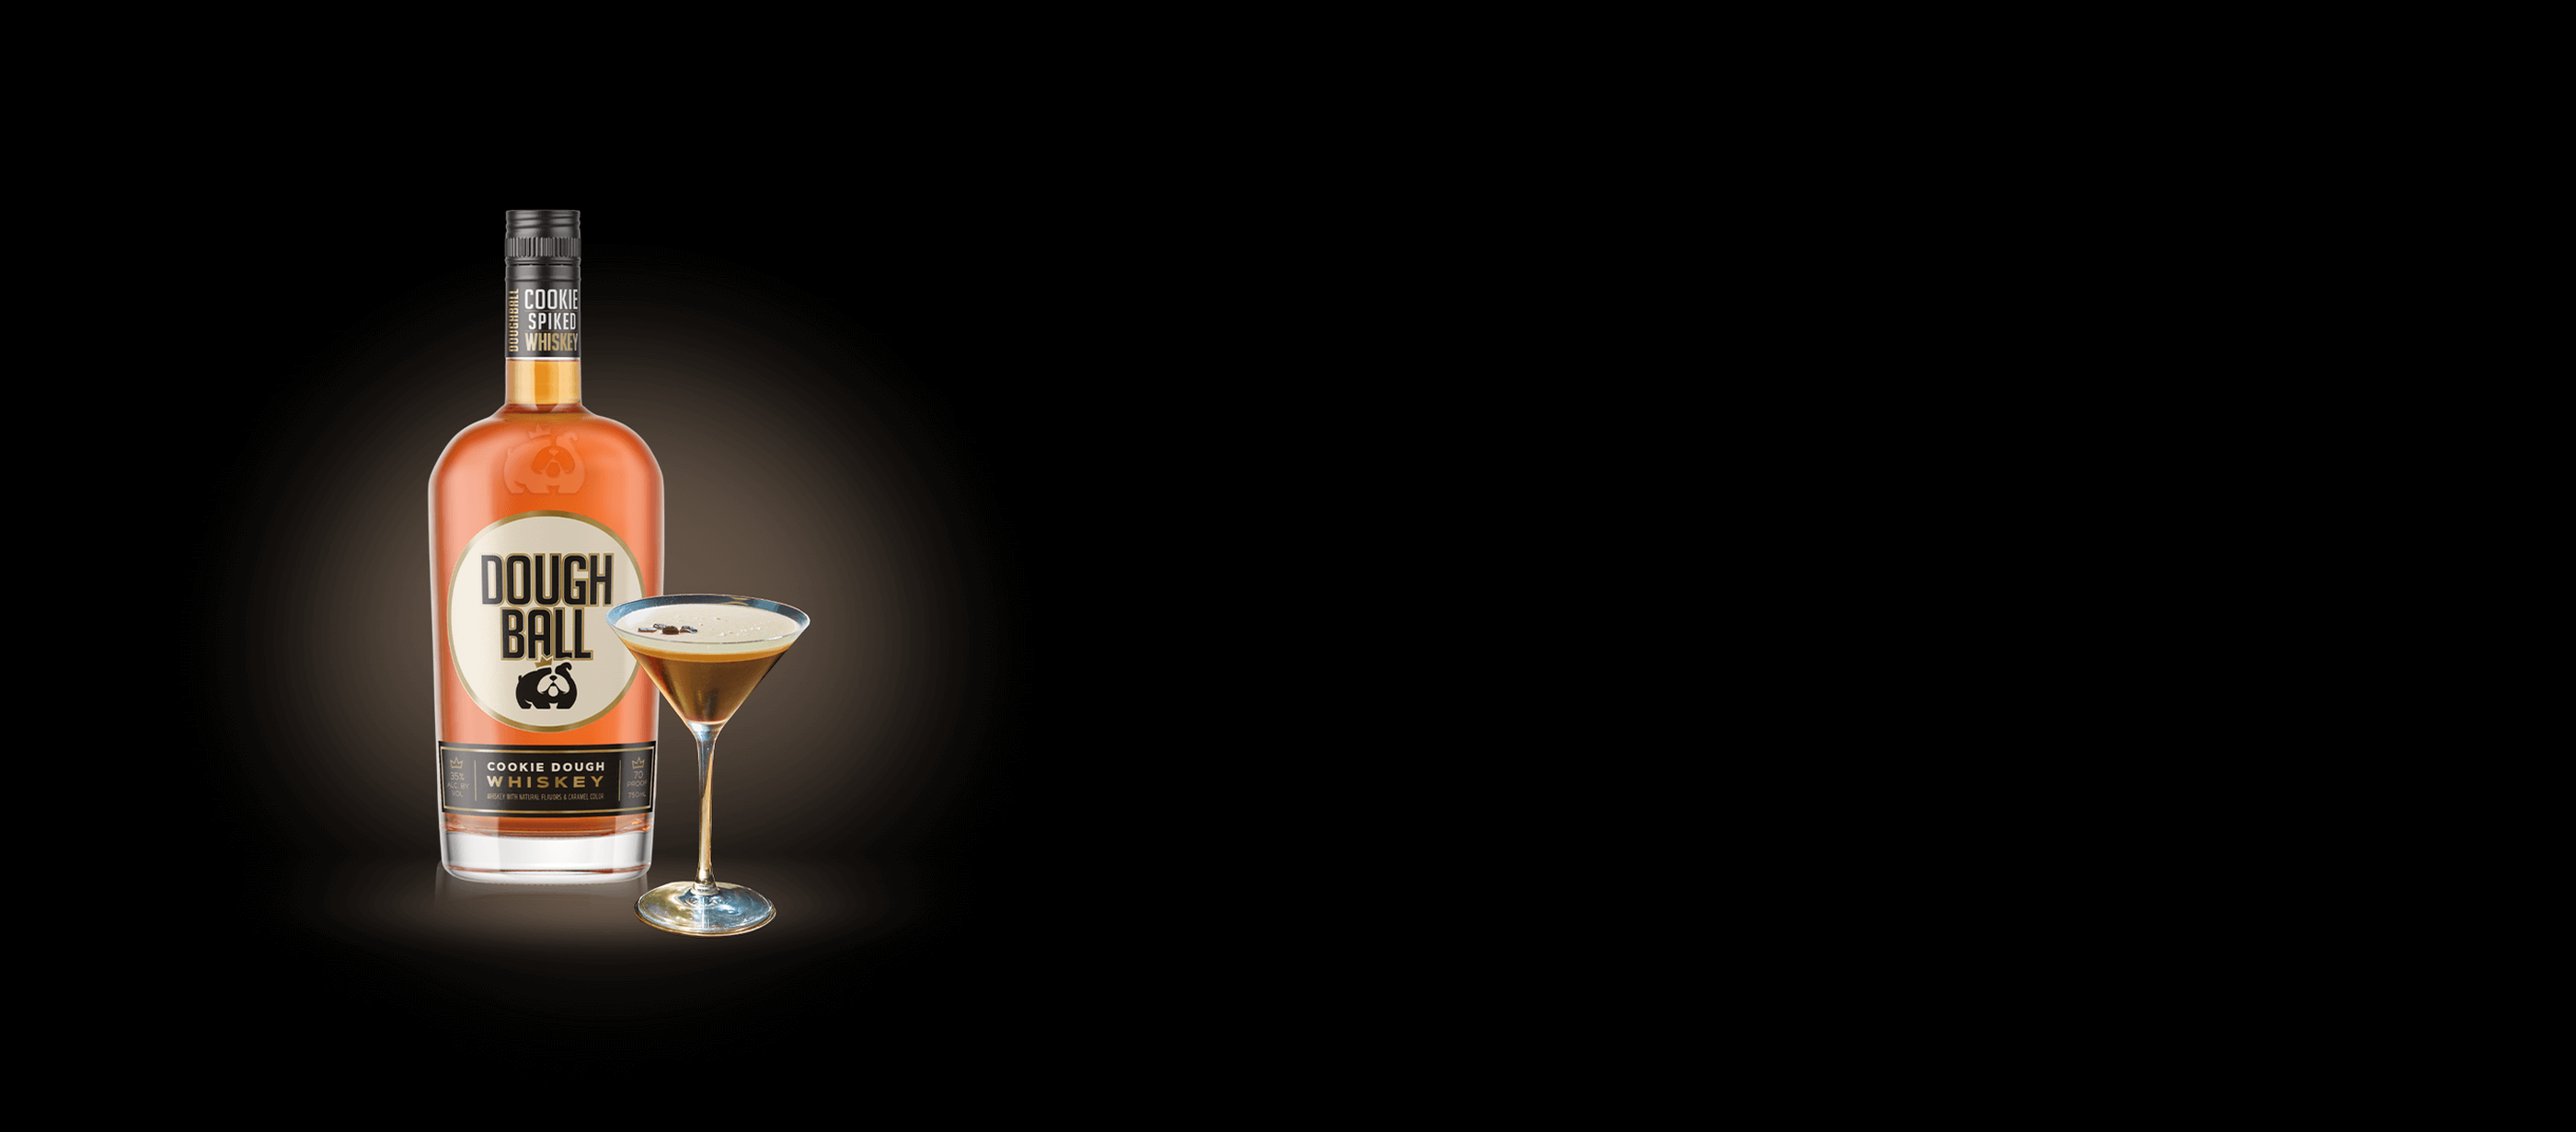 The Dough-spresso Martini Cocktail